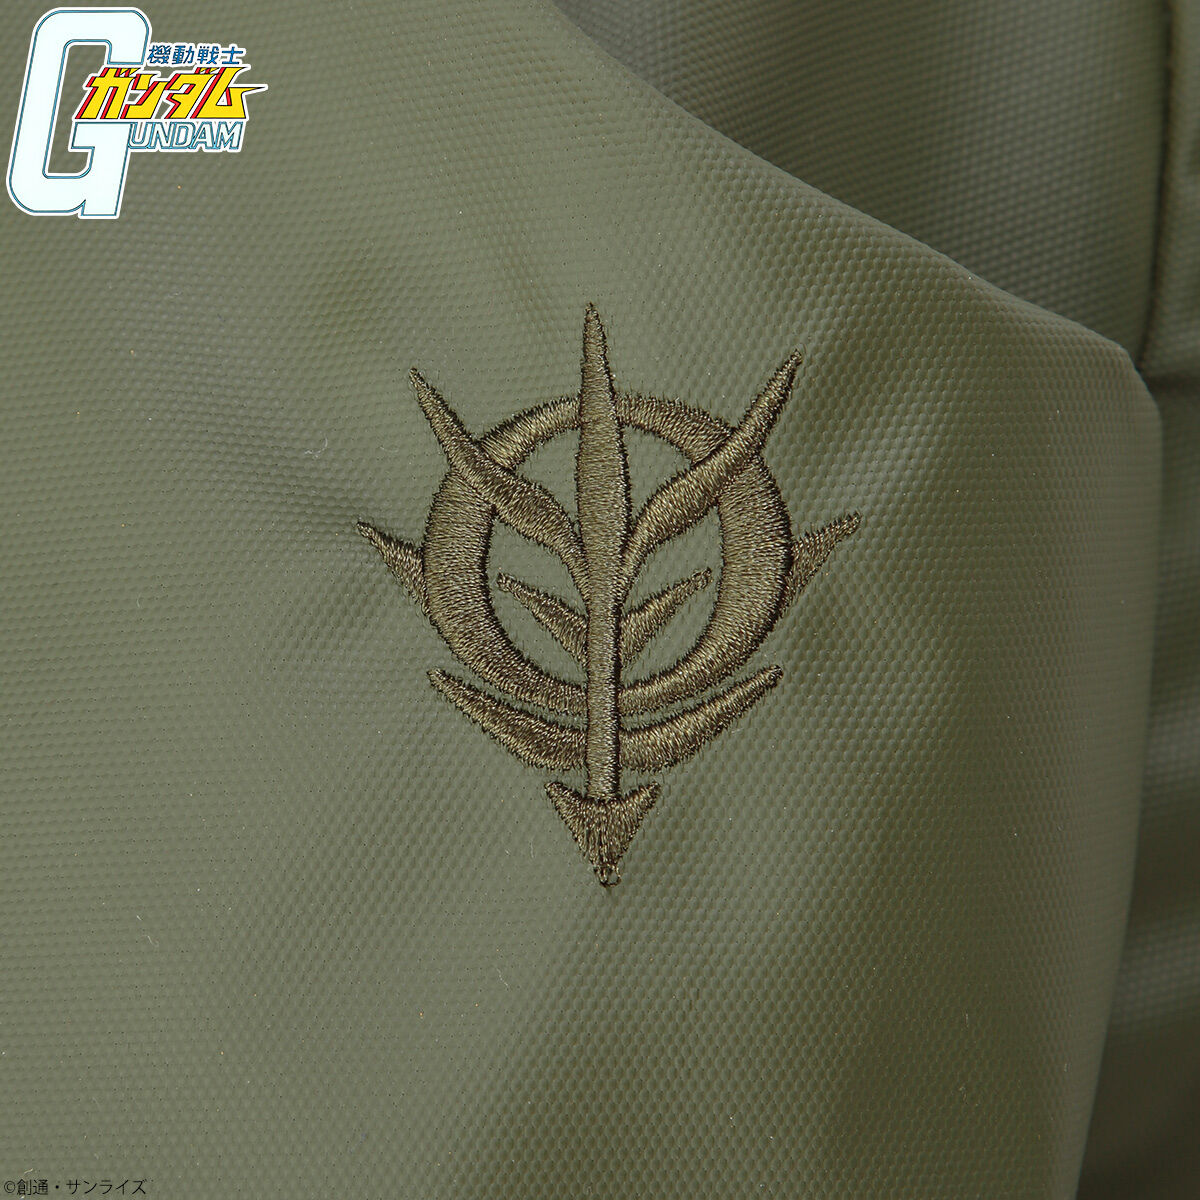 Mobile Suit Gundam Flight Suit Motif Backpack